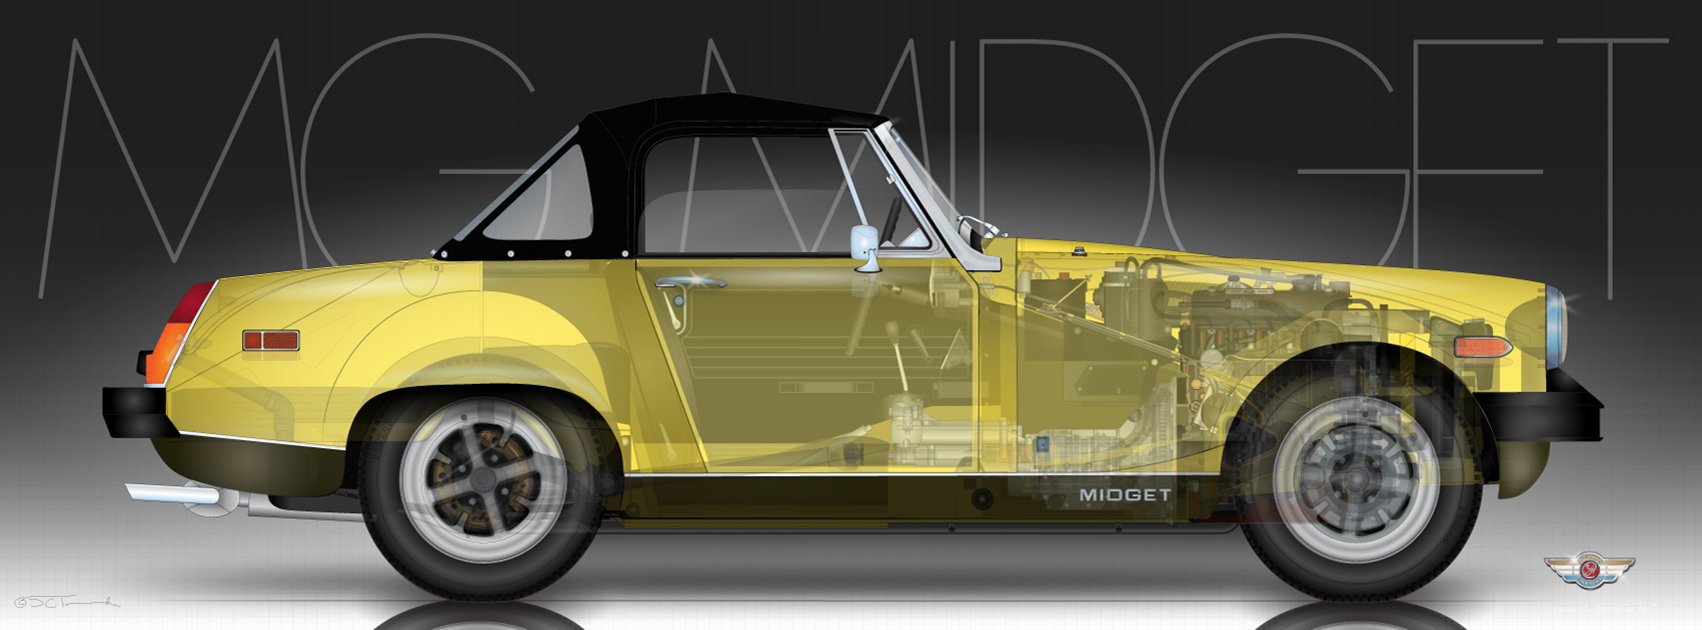 MG Midget MKI – 1500 – Sports Car Art